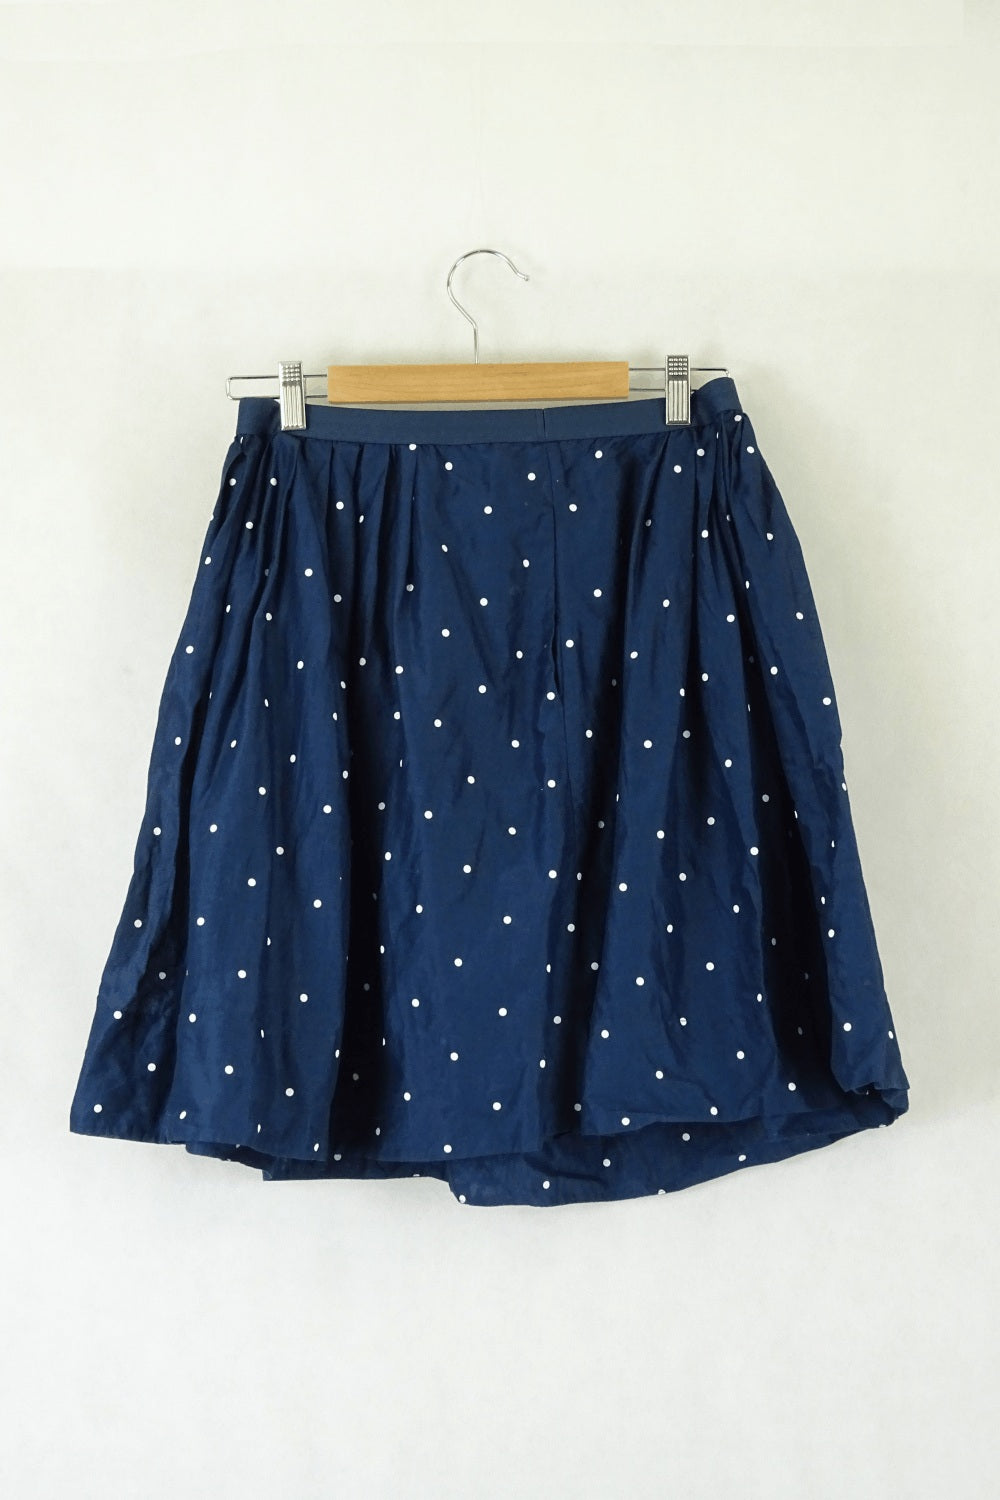 Uniqlo Blue Polka Dot Skirt M